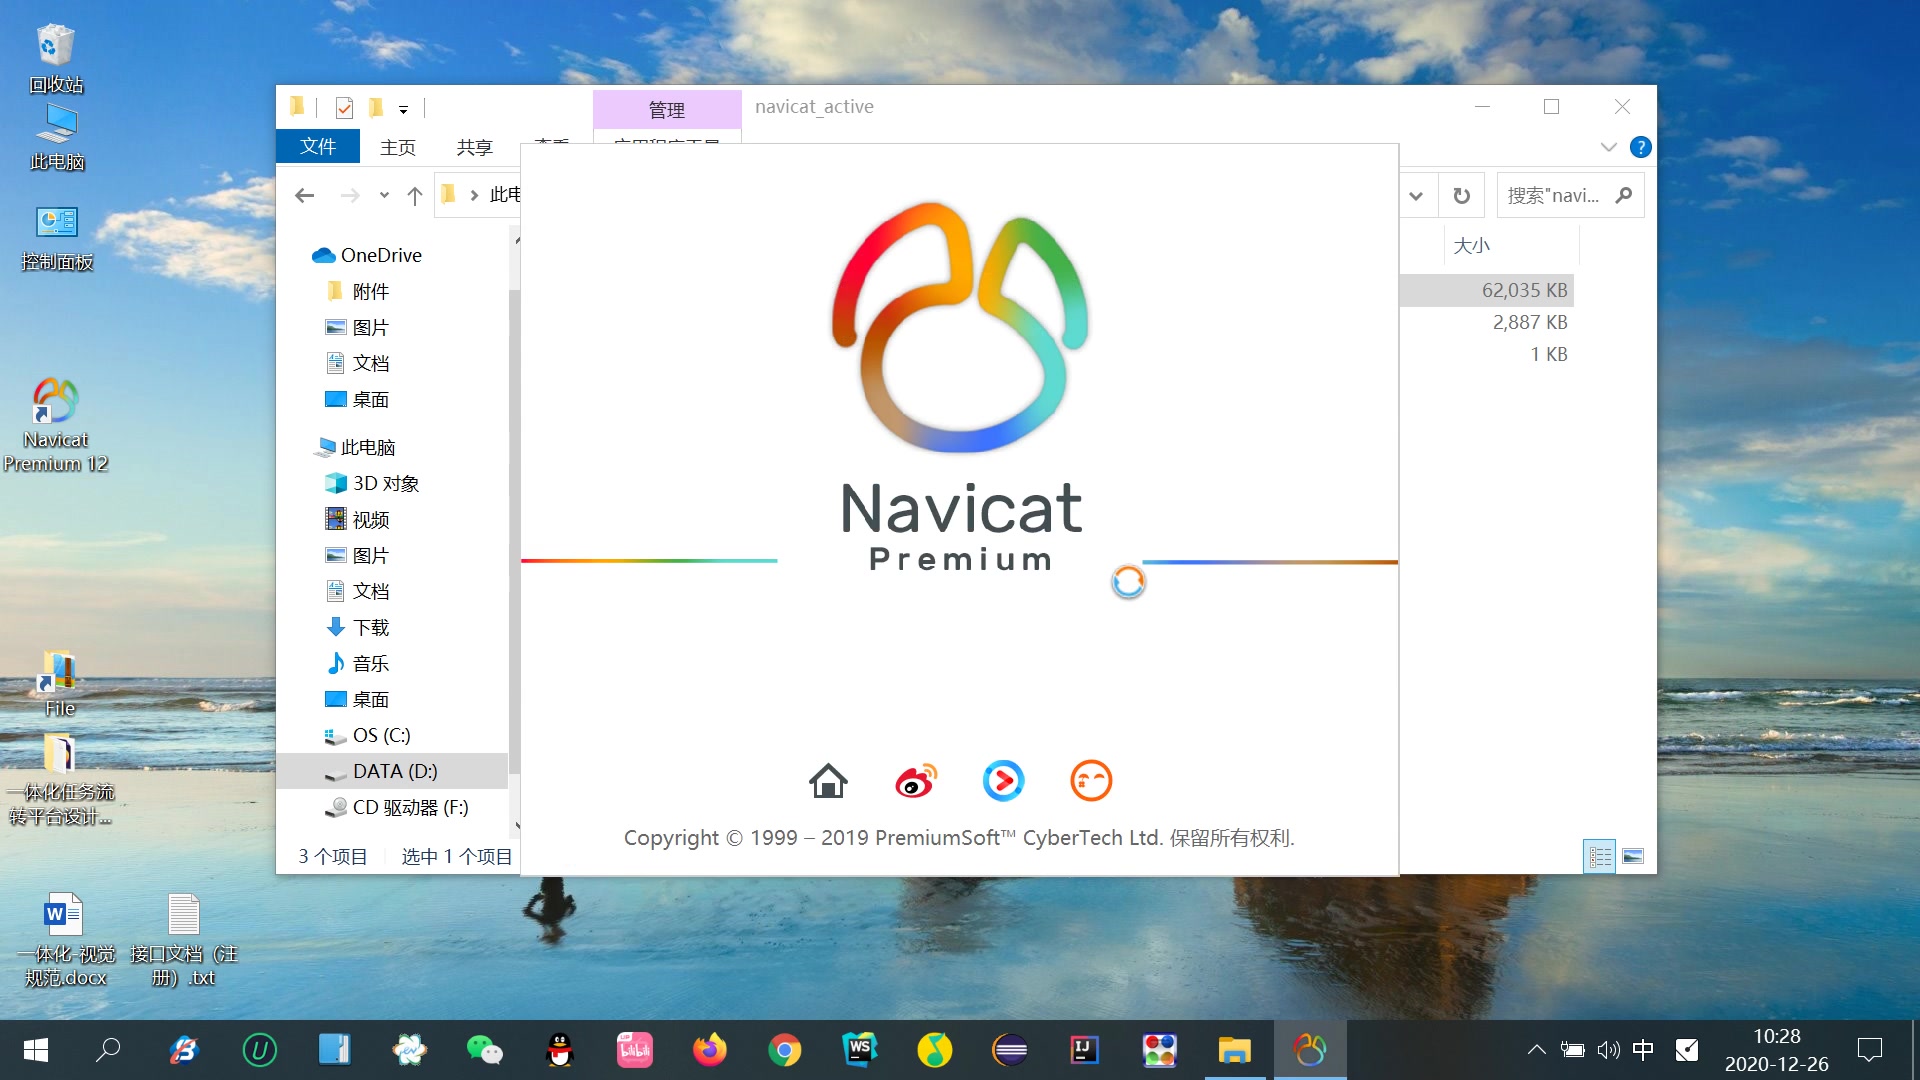 Navicat Premium 16.2.5 instal the new for mac